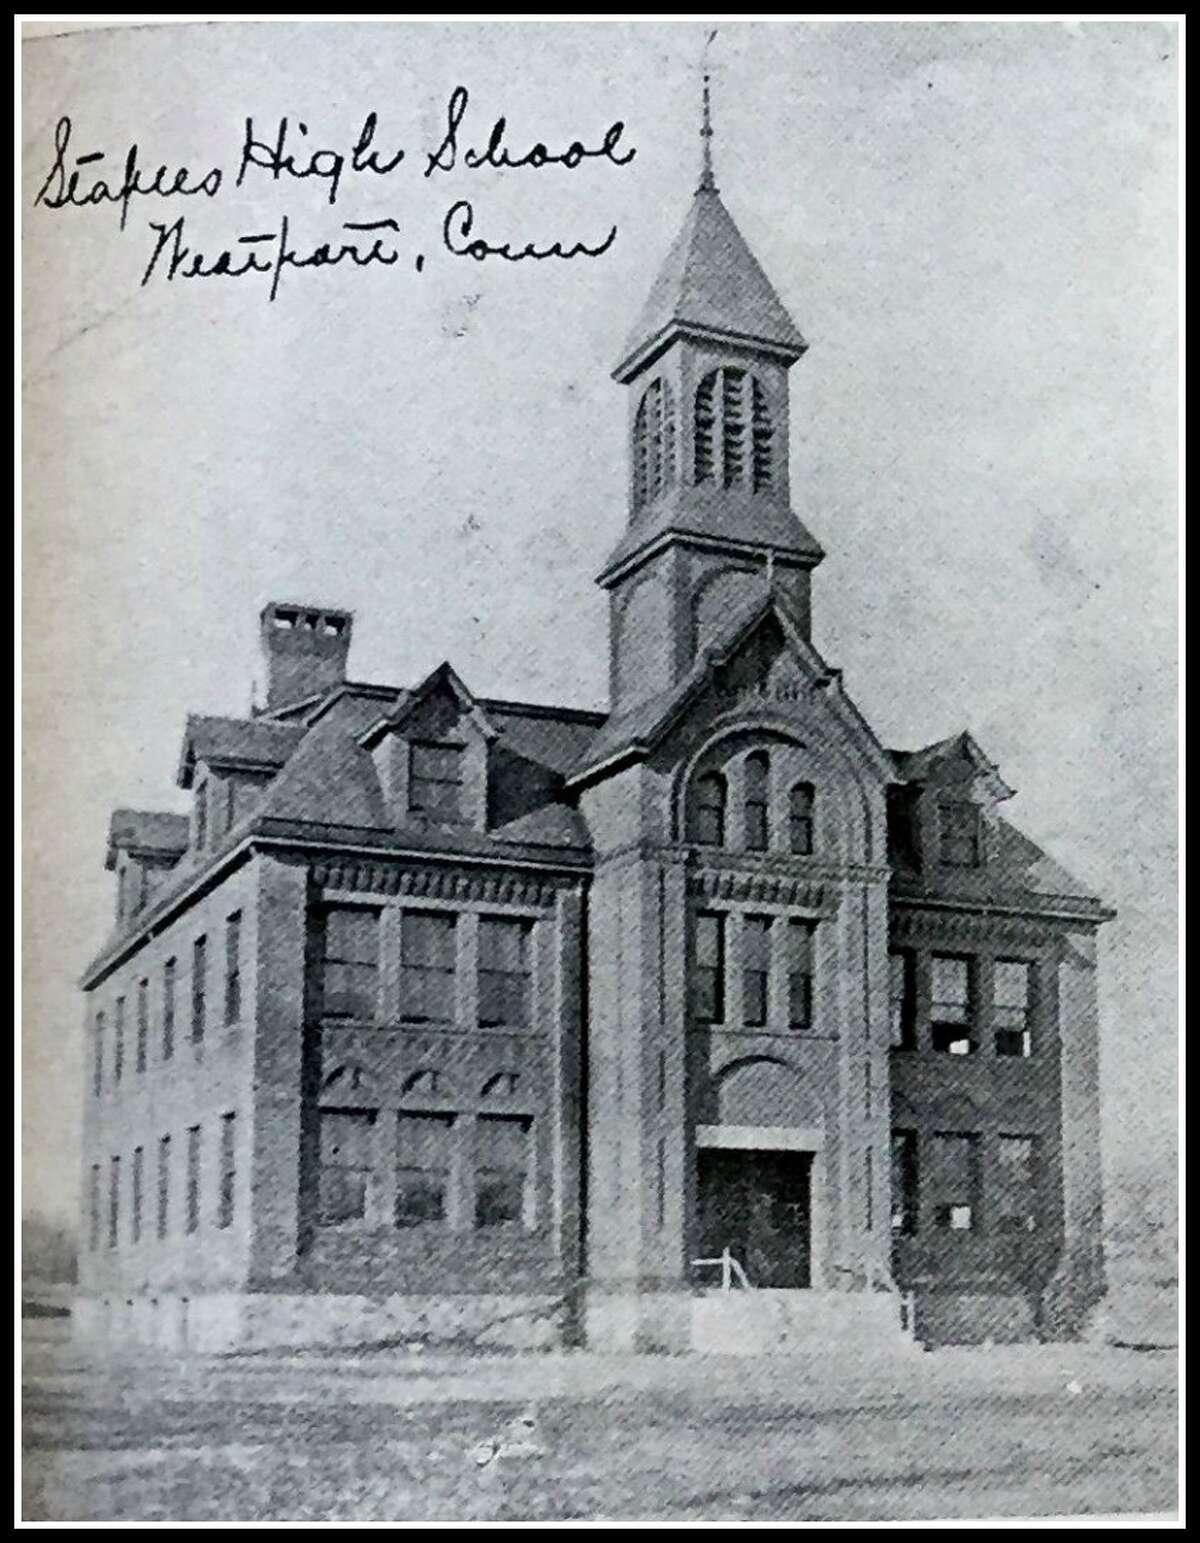 Staples High School pictured in 1914 in the Westport Herald.